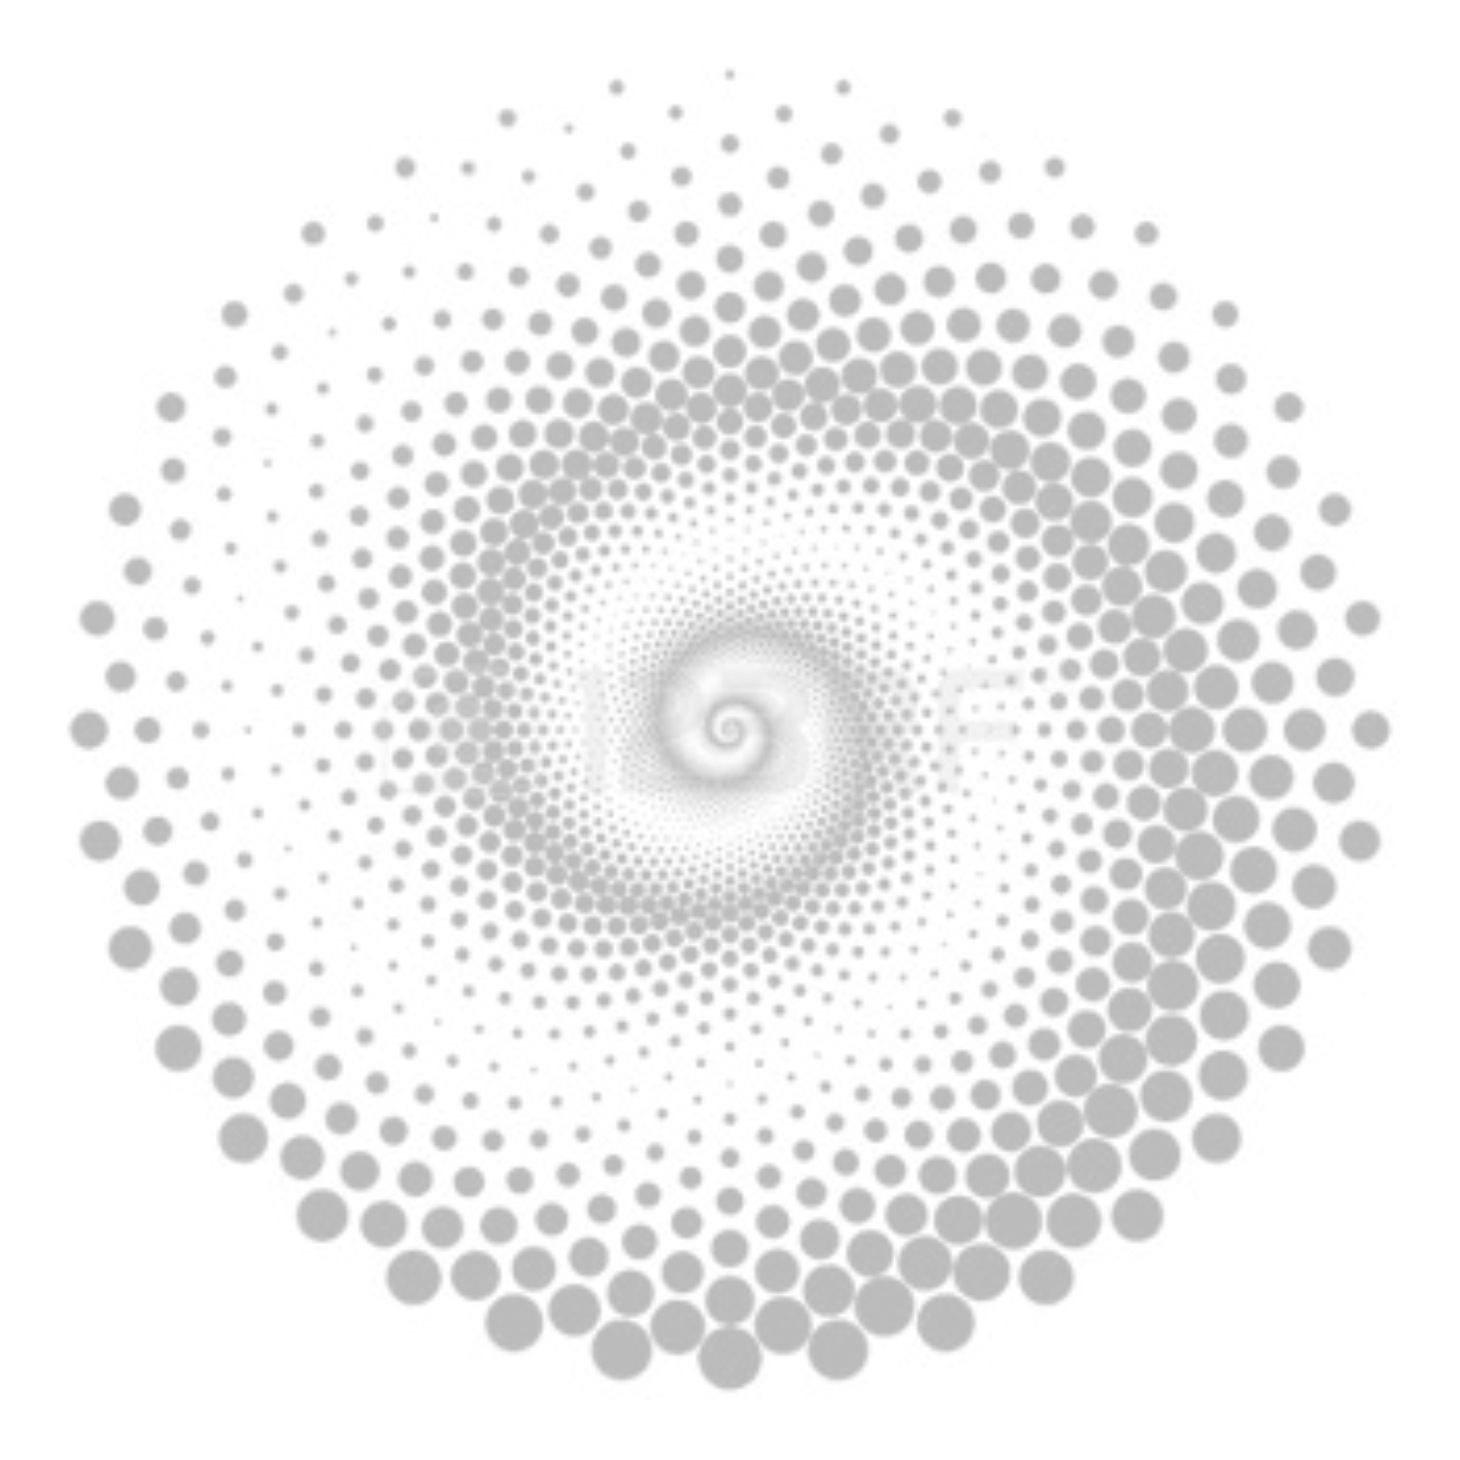 Spiral dots - Graphic Design Forum